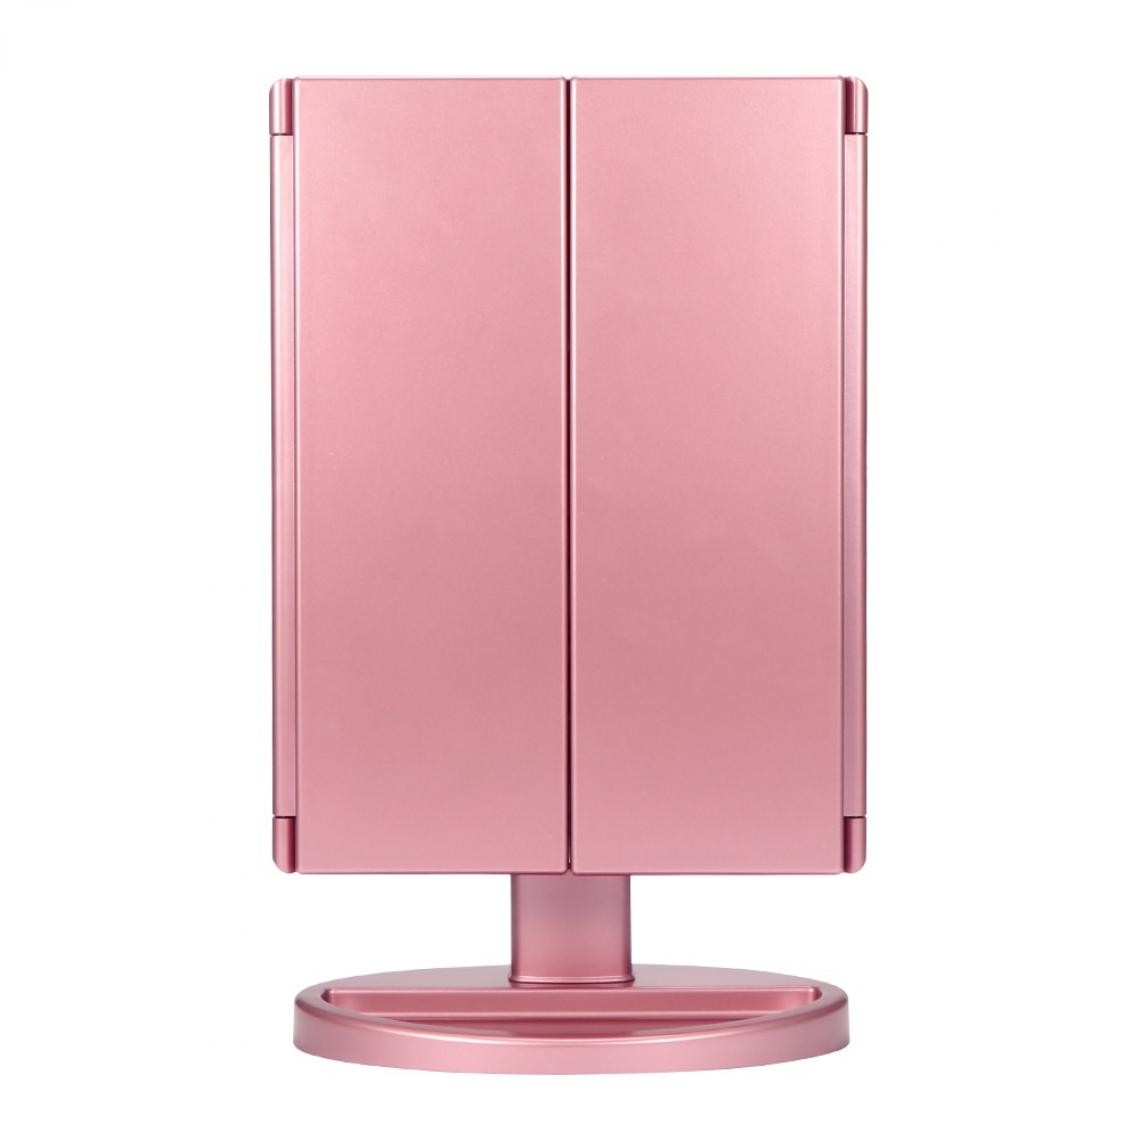 Universal - Miroir Miroir Beauty Mirror Desktop USB Smart Touch Beauty Mirror Folding Mirror 22 LED Light Mirror |(Rose) - Miroir de salle de bain